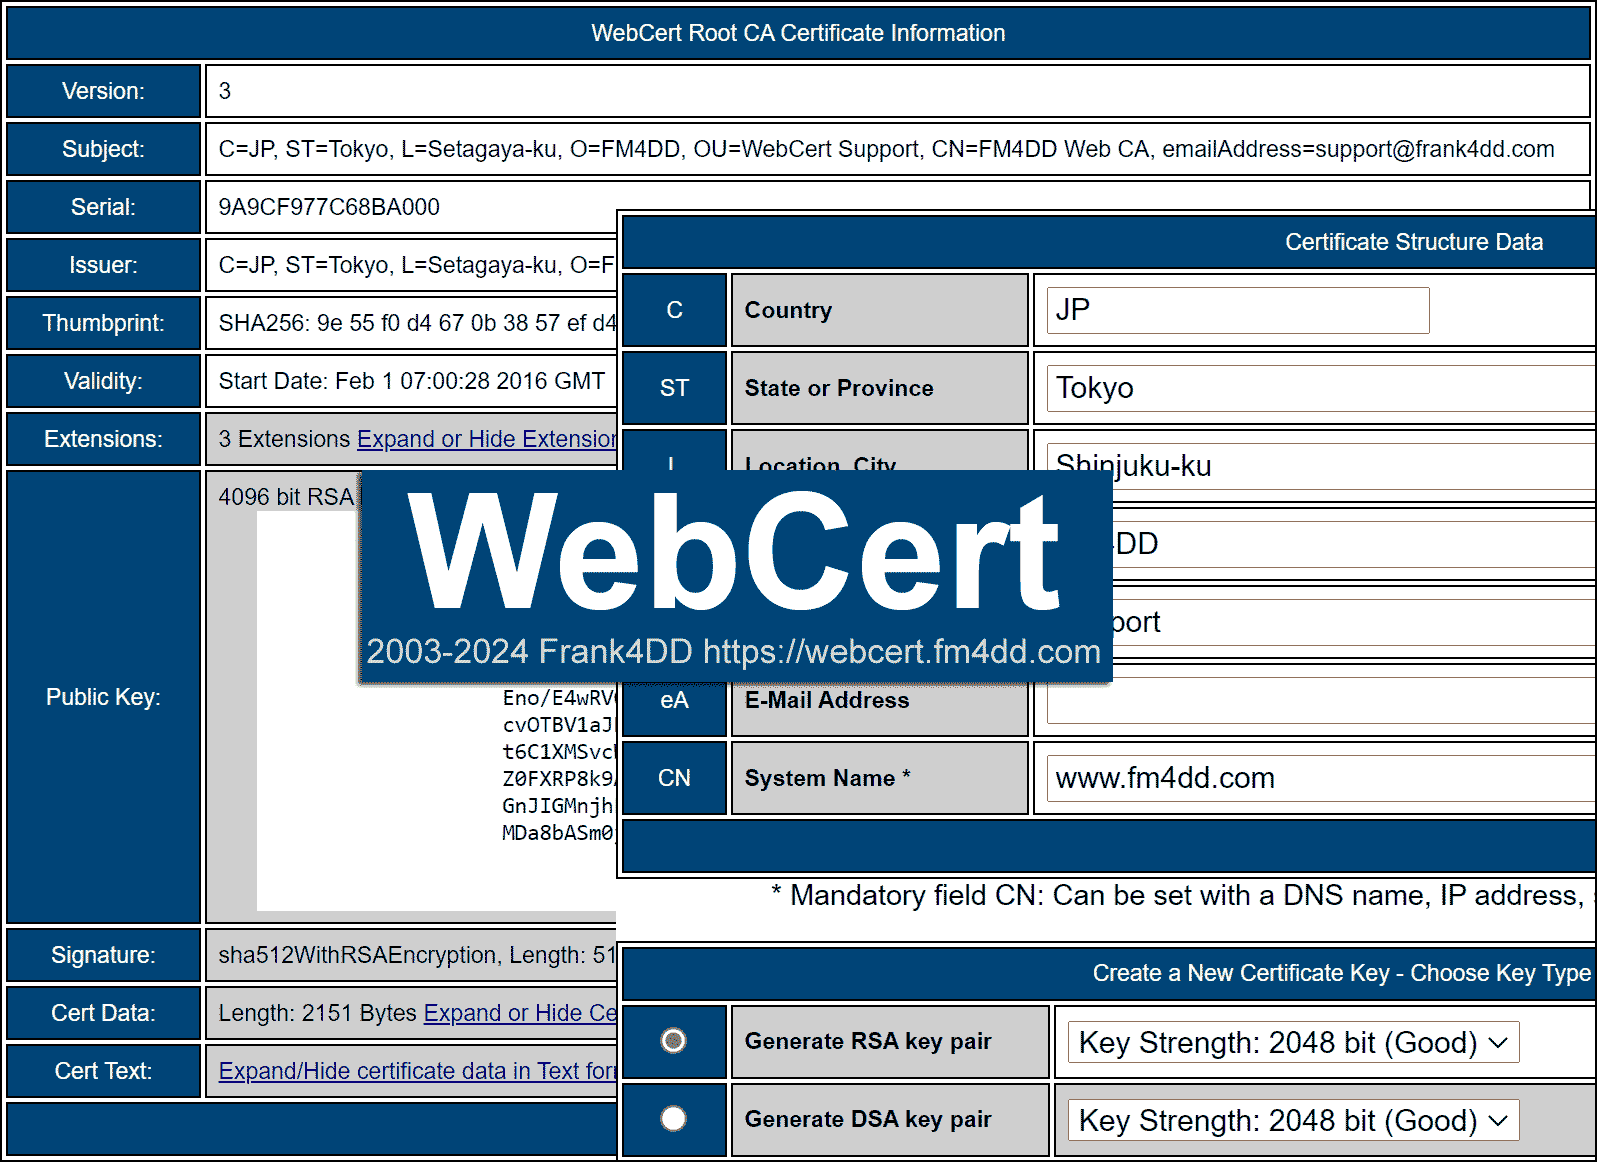 WebCert Application